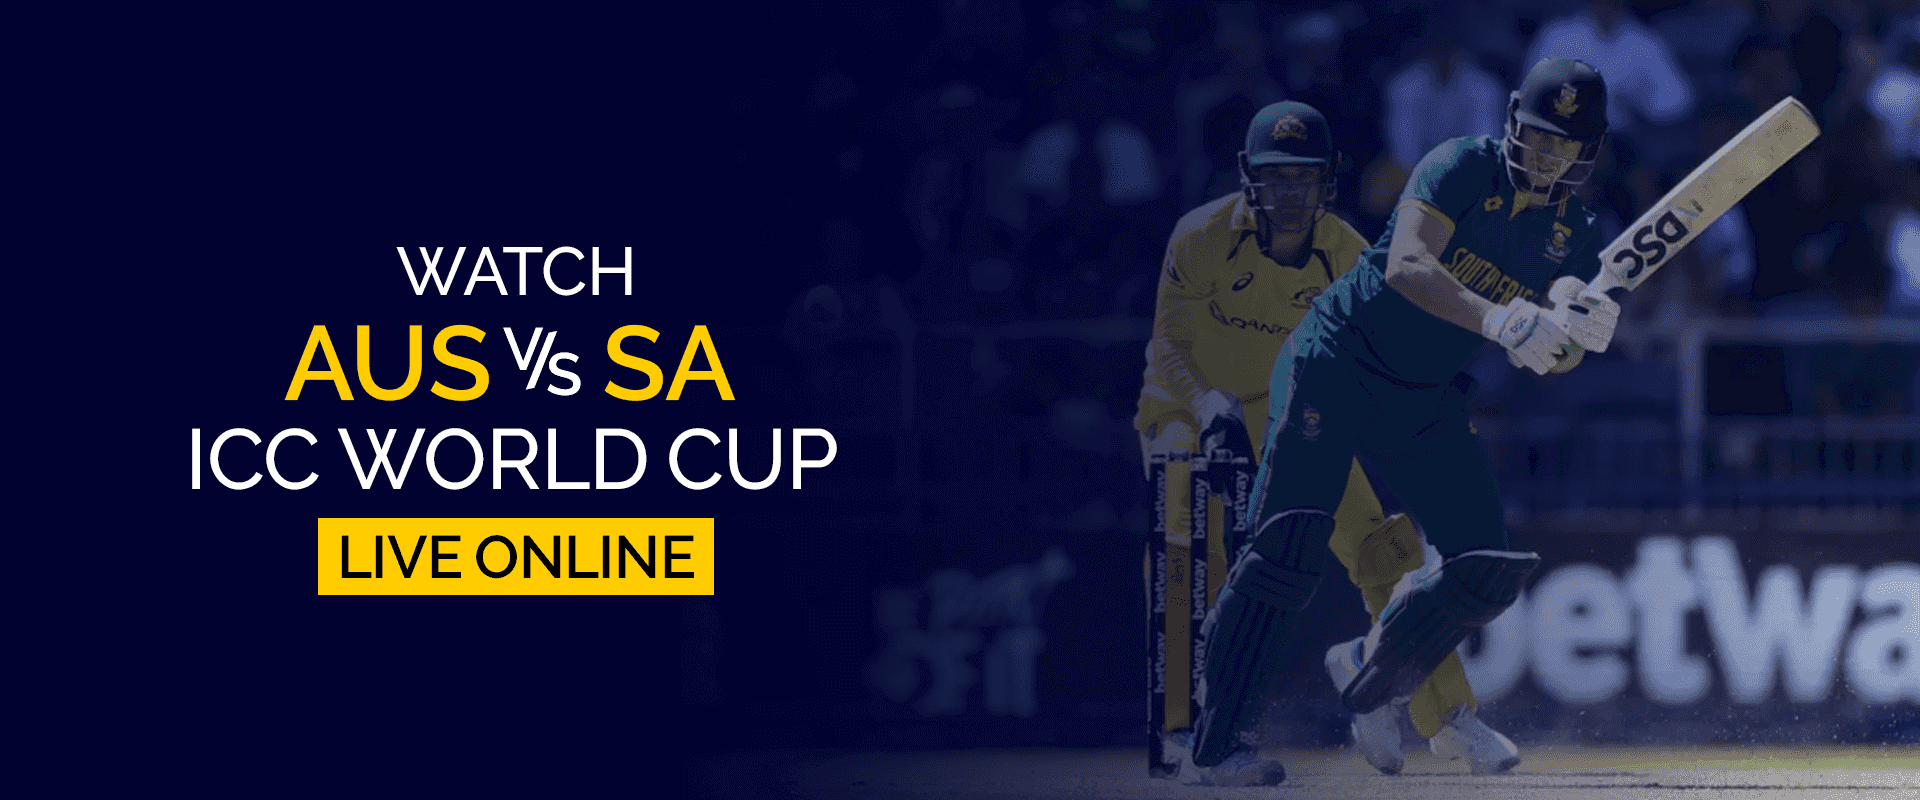 Guarda la Coppa del mondo ICC AUS vs SA in diretta online